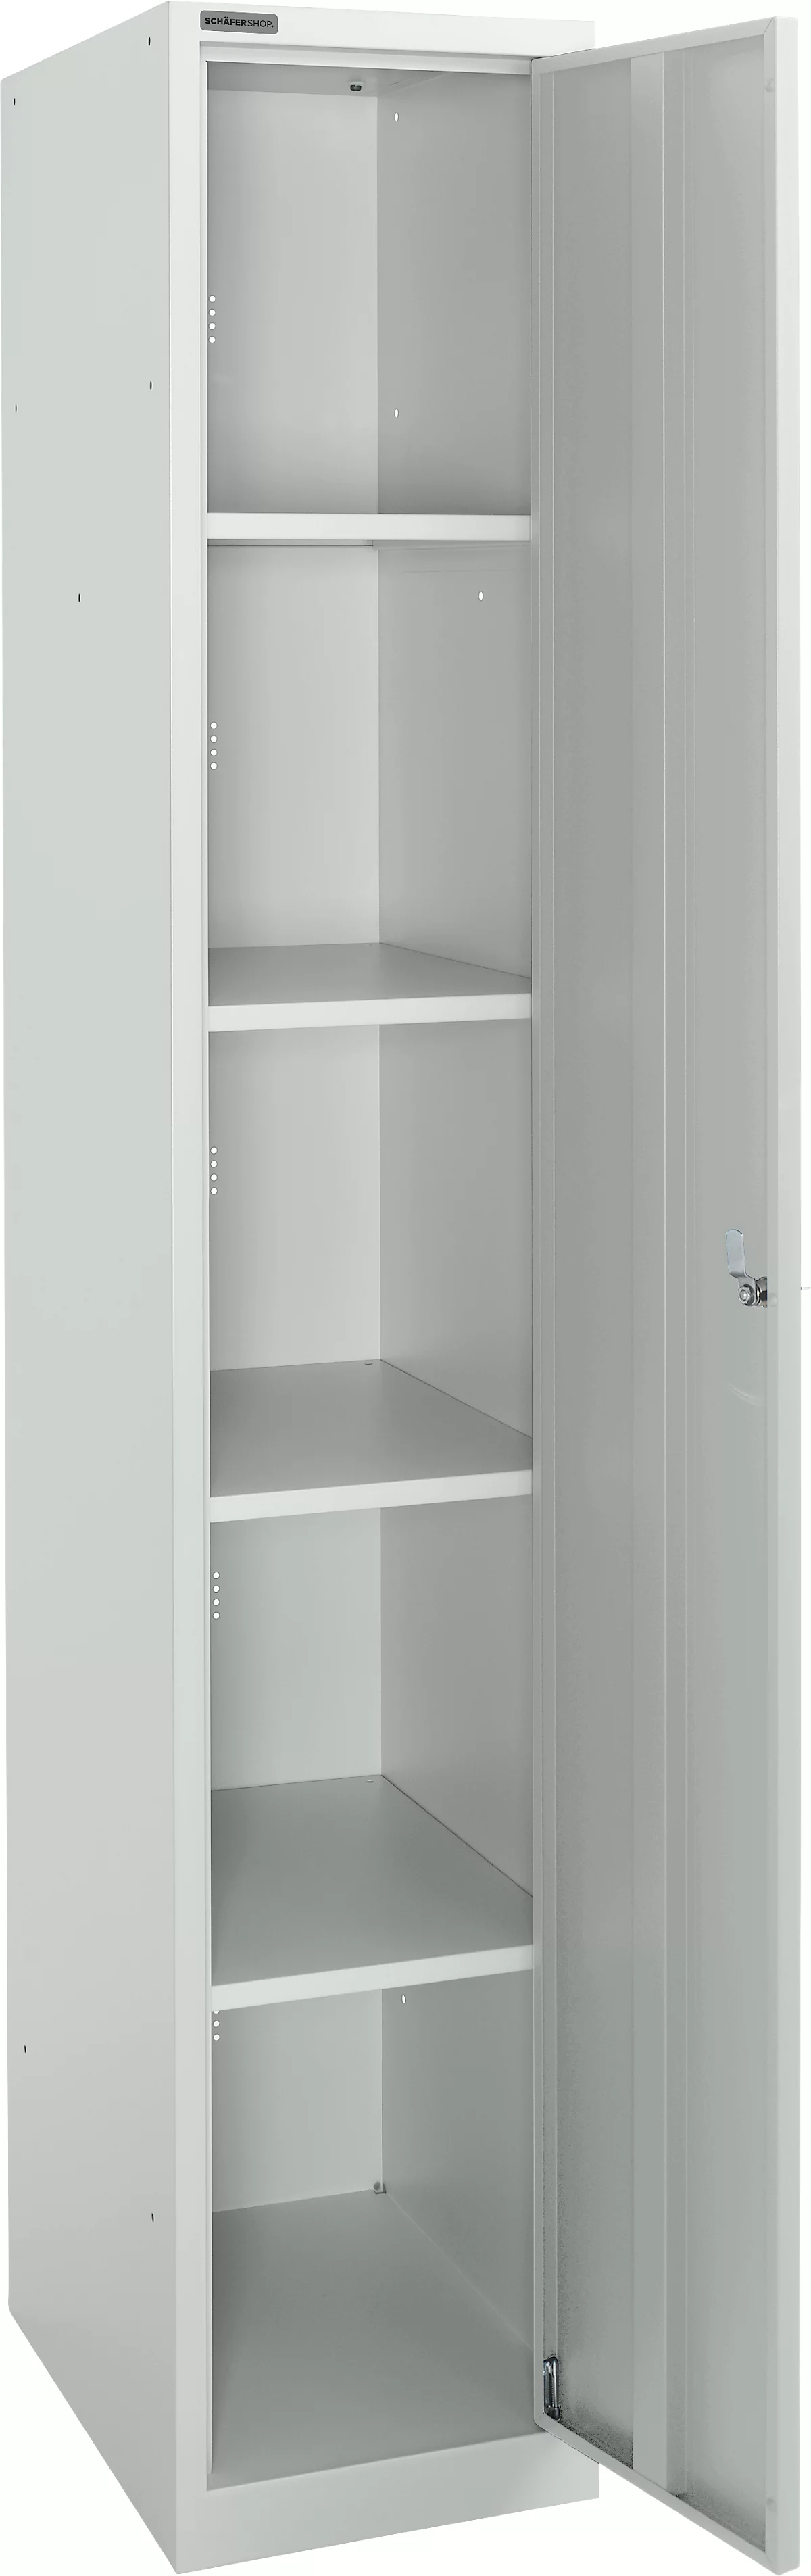 Schäfer Shop Select Armario de guardarropa, 1 compartimento de 350 mm de ancho, 5 compartimentos con 4 estantes, con cerradura, gris claro/gris claro